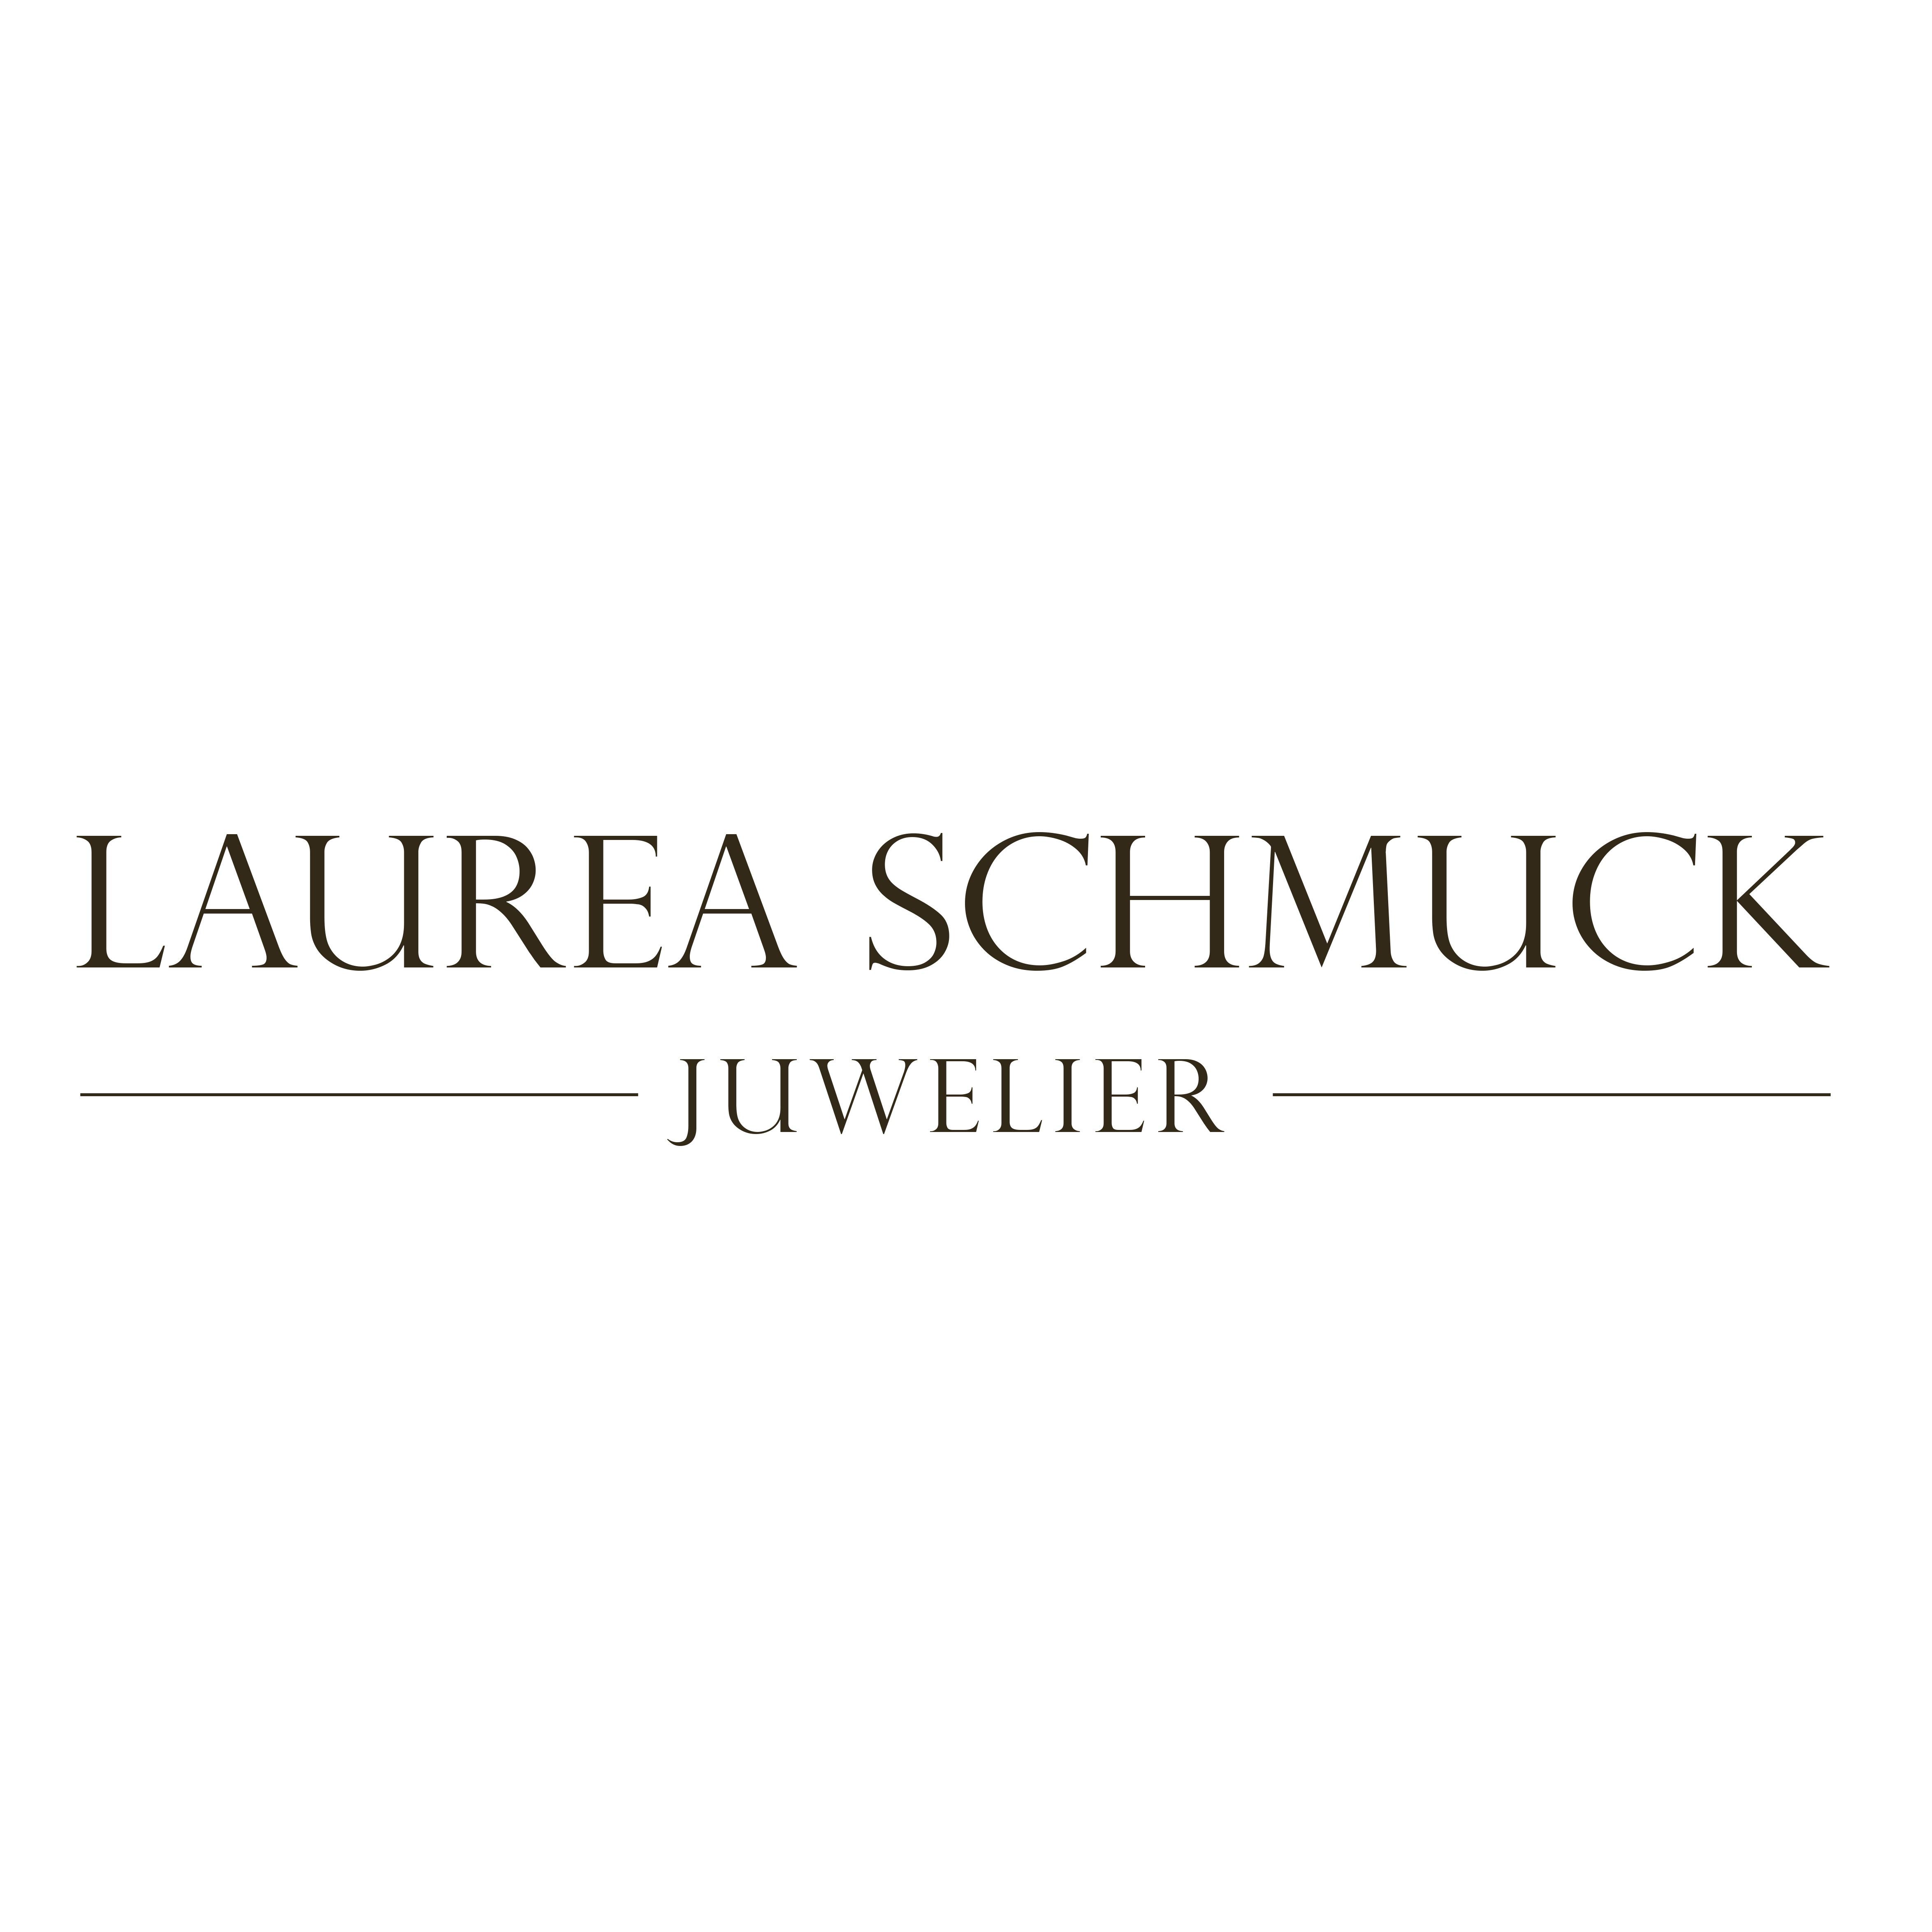 Laurea Schmuck Juwelier in Berlin - Logo